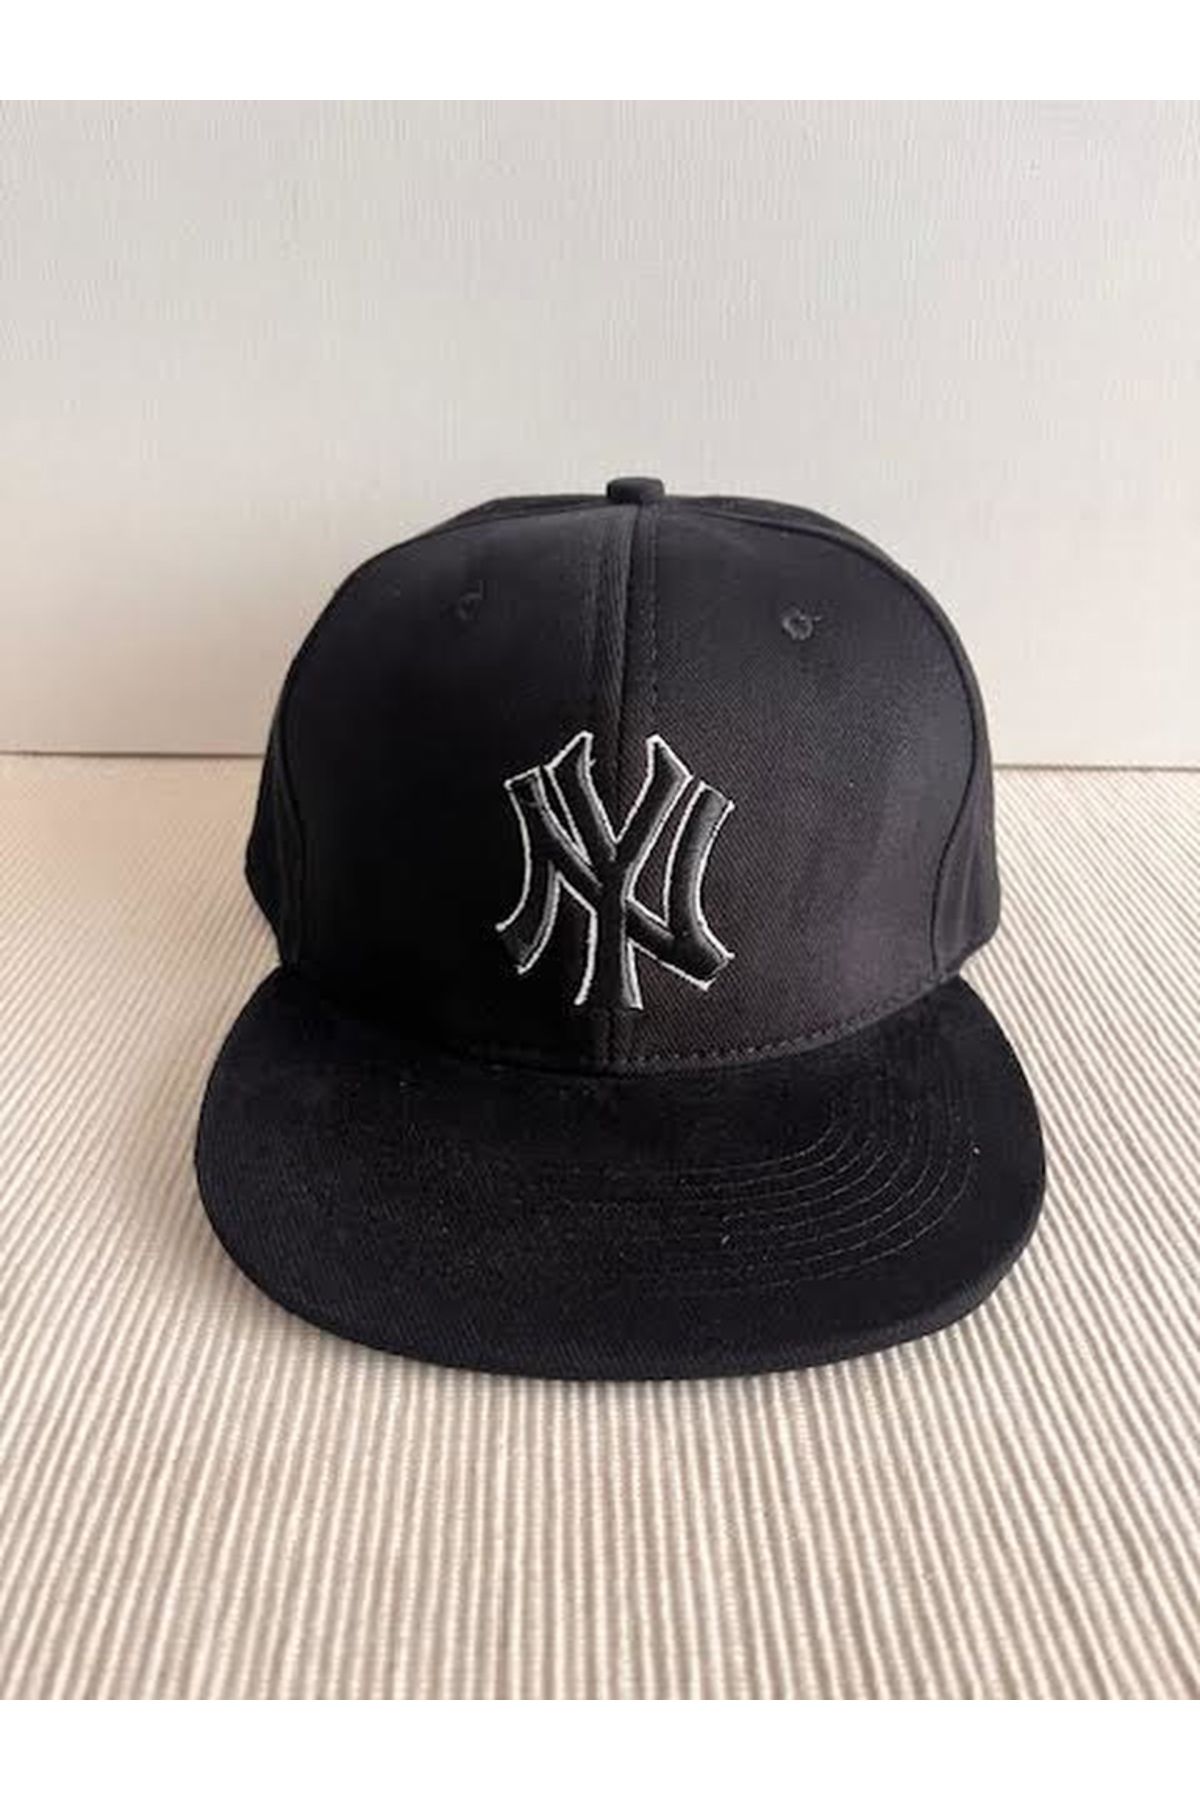 HatClub Exclusive NY New York Nakışlı Arkasından Ayarlanabilir Unisex Kontürlü Siyah Renk Hip Hop Şapka